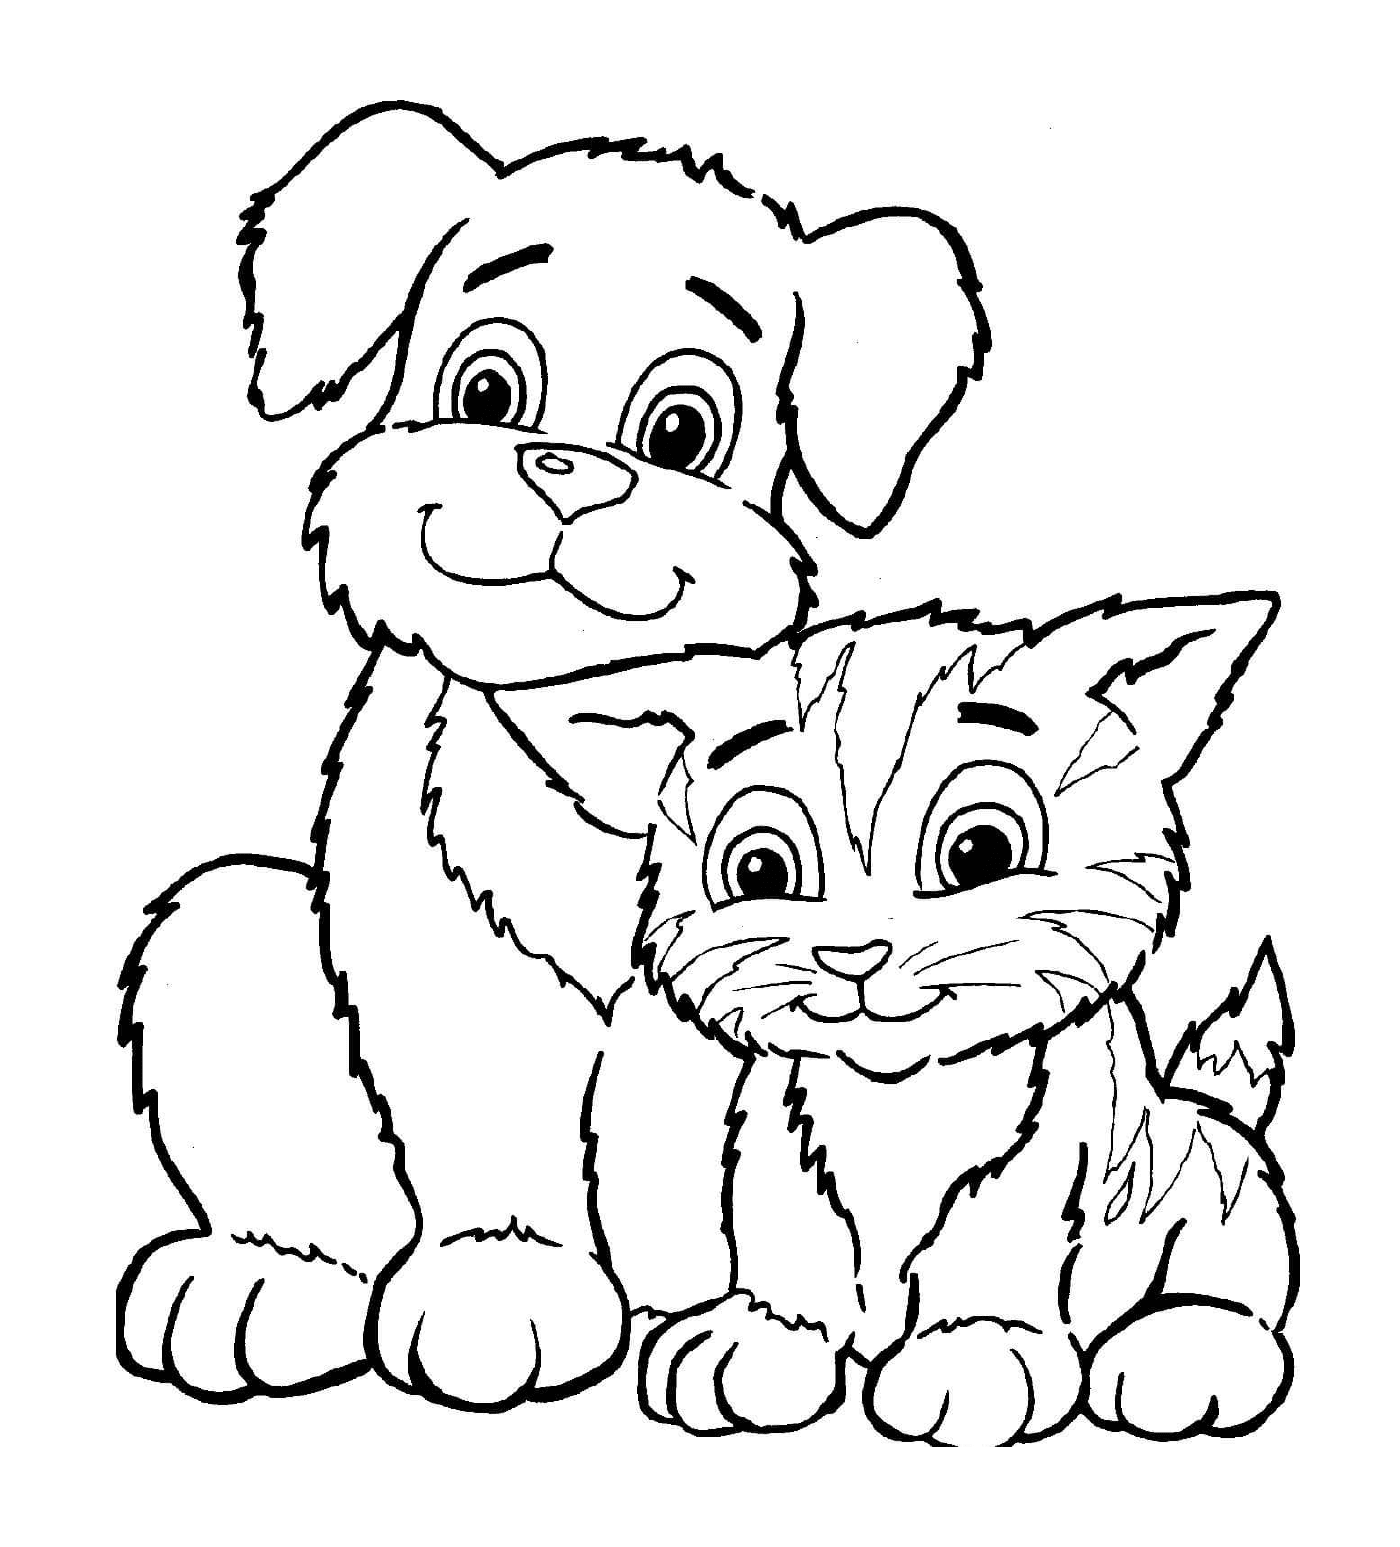  一只猫和一条狗 并肩并肩坐在一起 